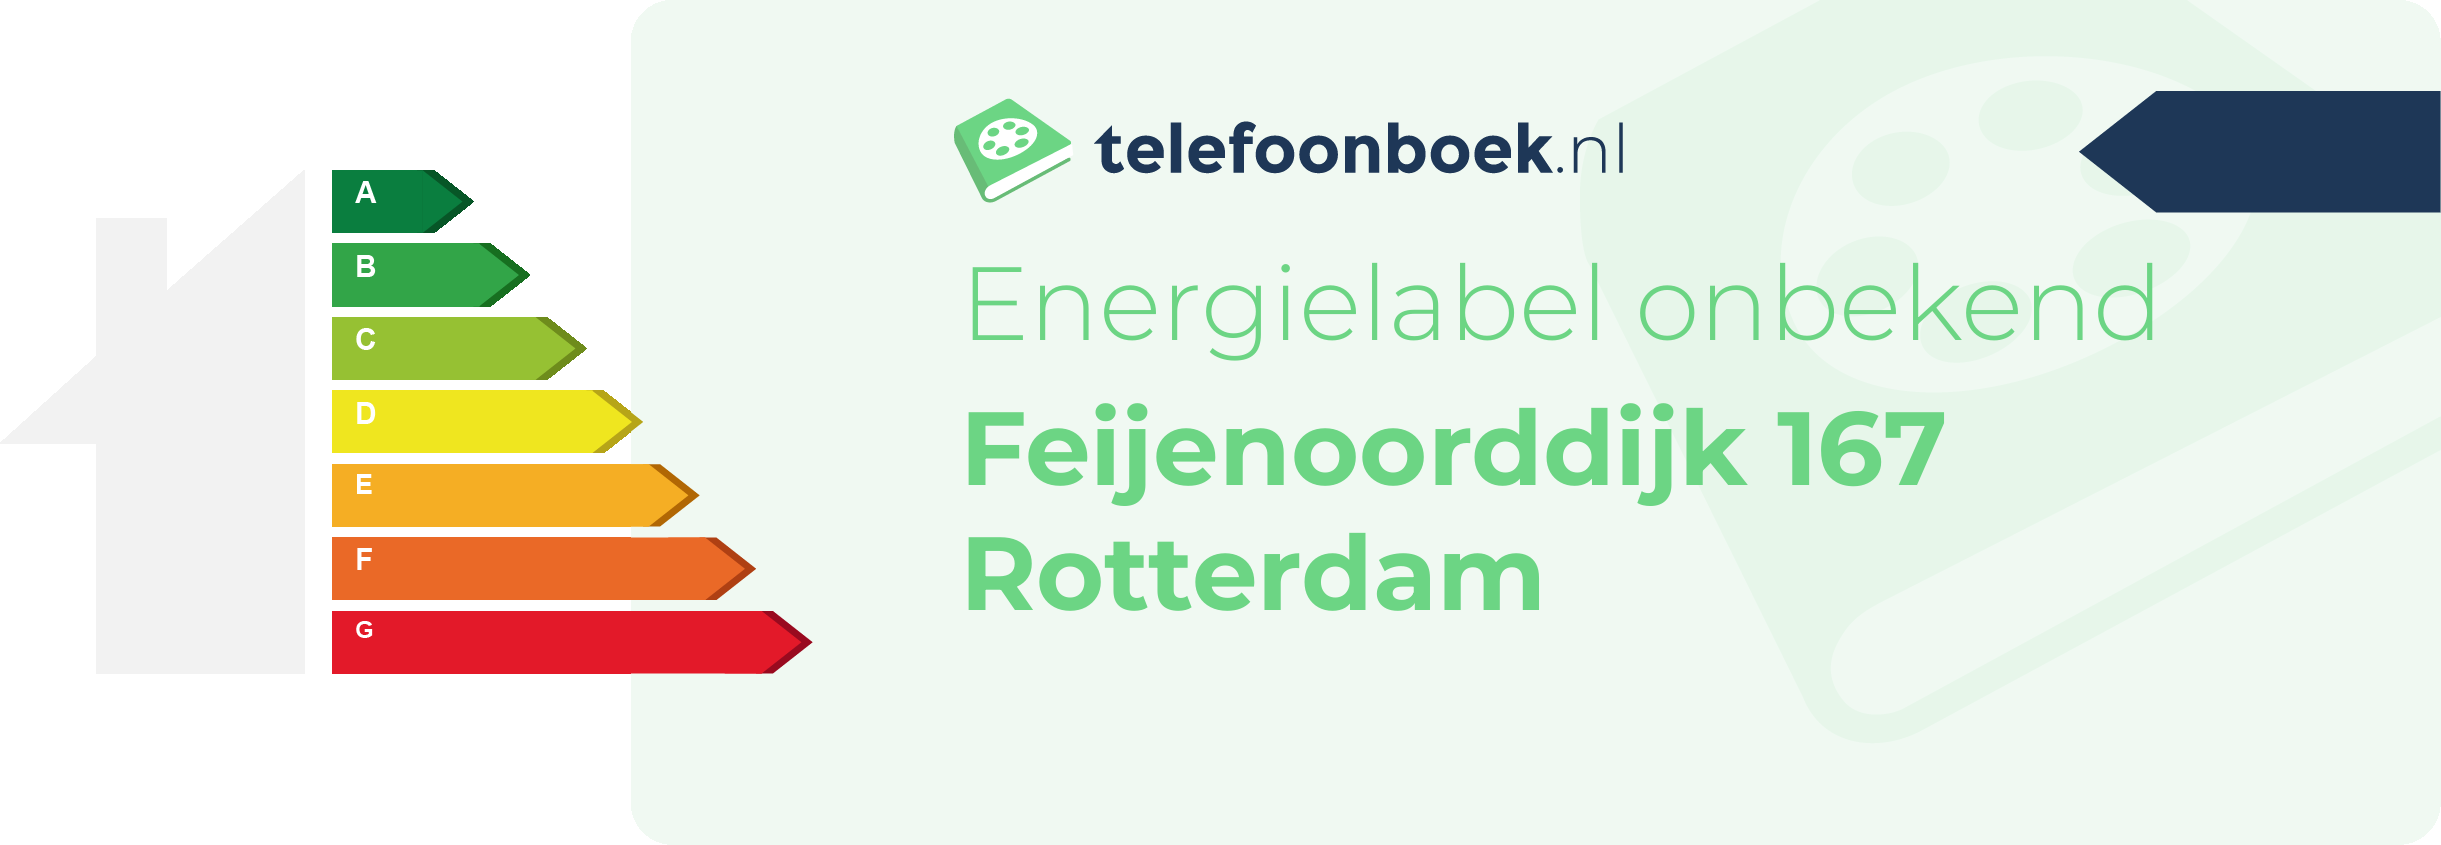 Energielabel Feijenoorddijk 167 Rotterdam